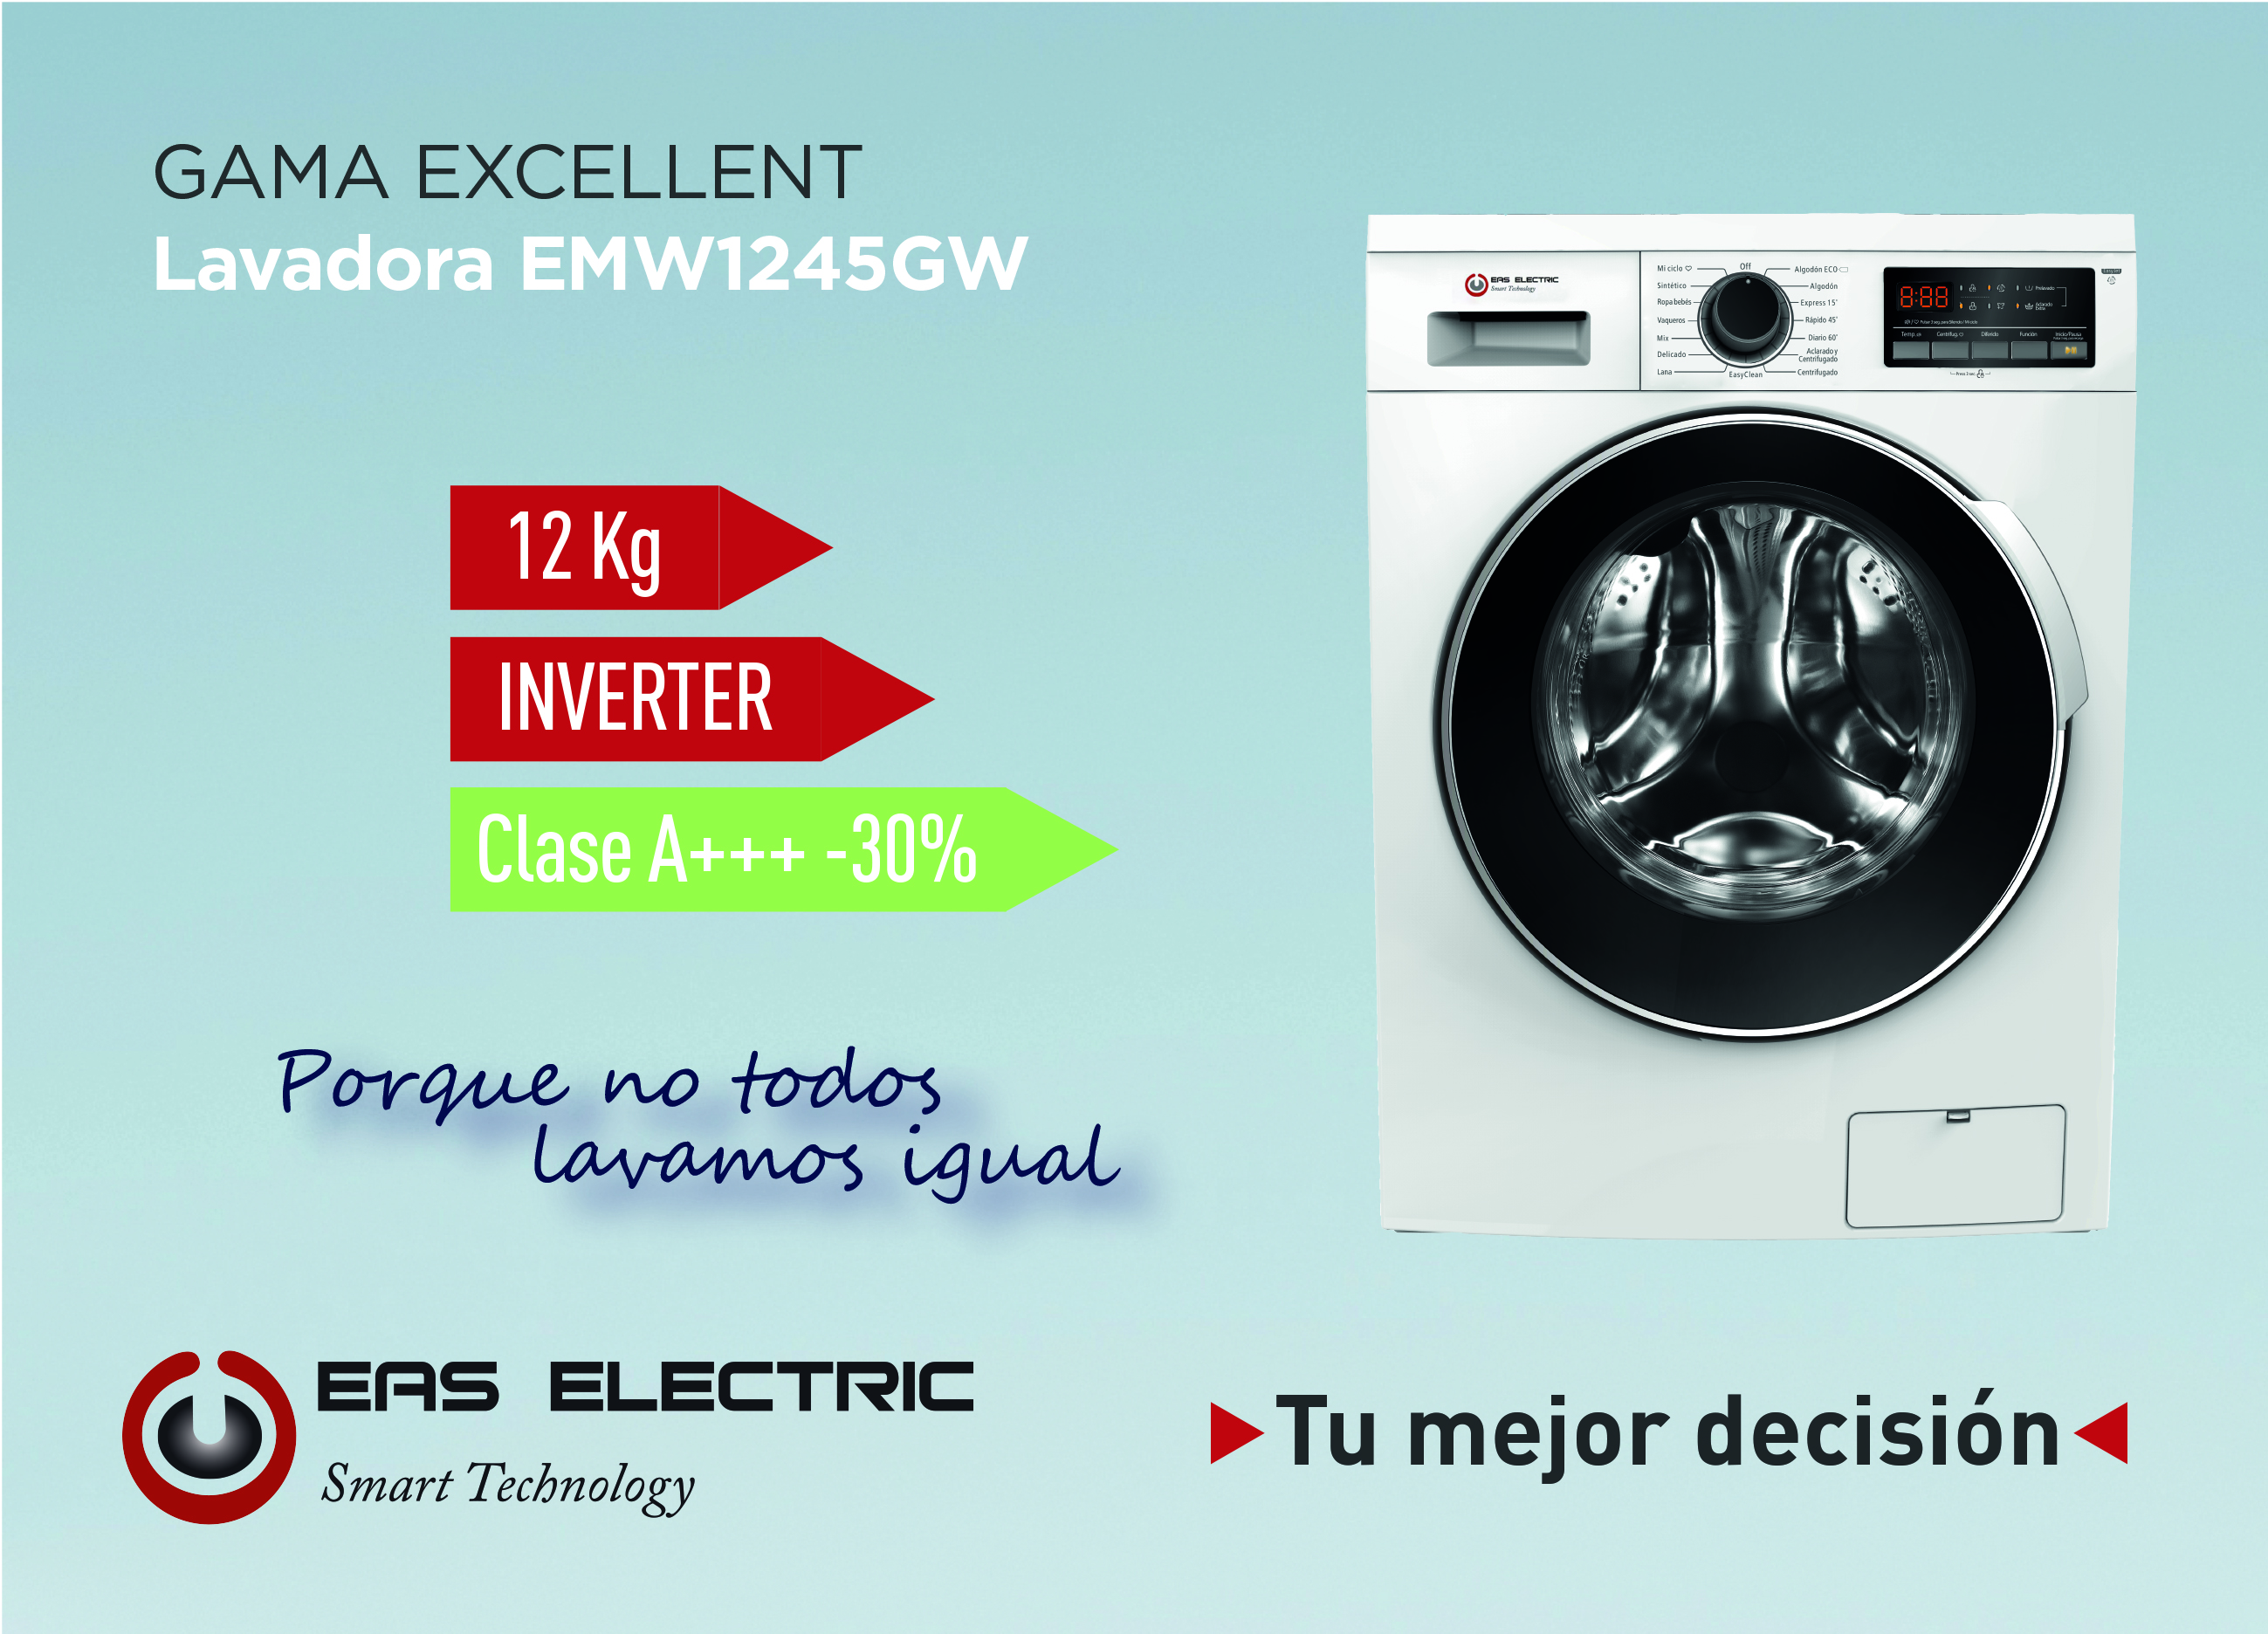 Eas Electric amplía su gama Excellent con una lavadora de 12 kg para cubrir  la demanda de máquinas de gran capacidad